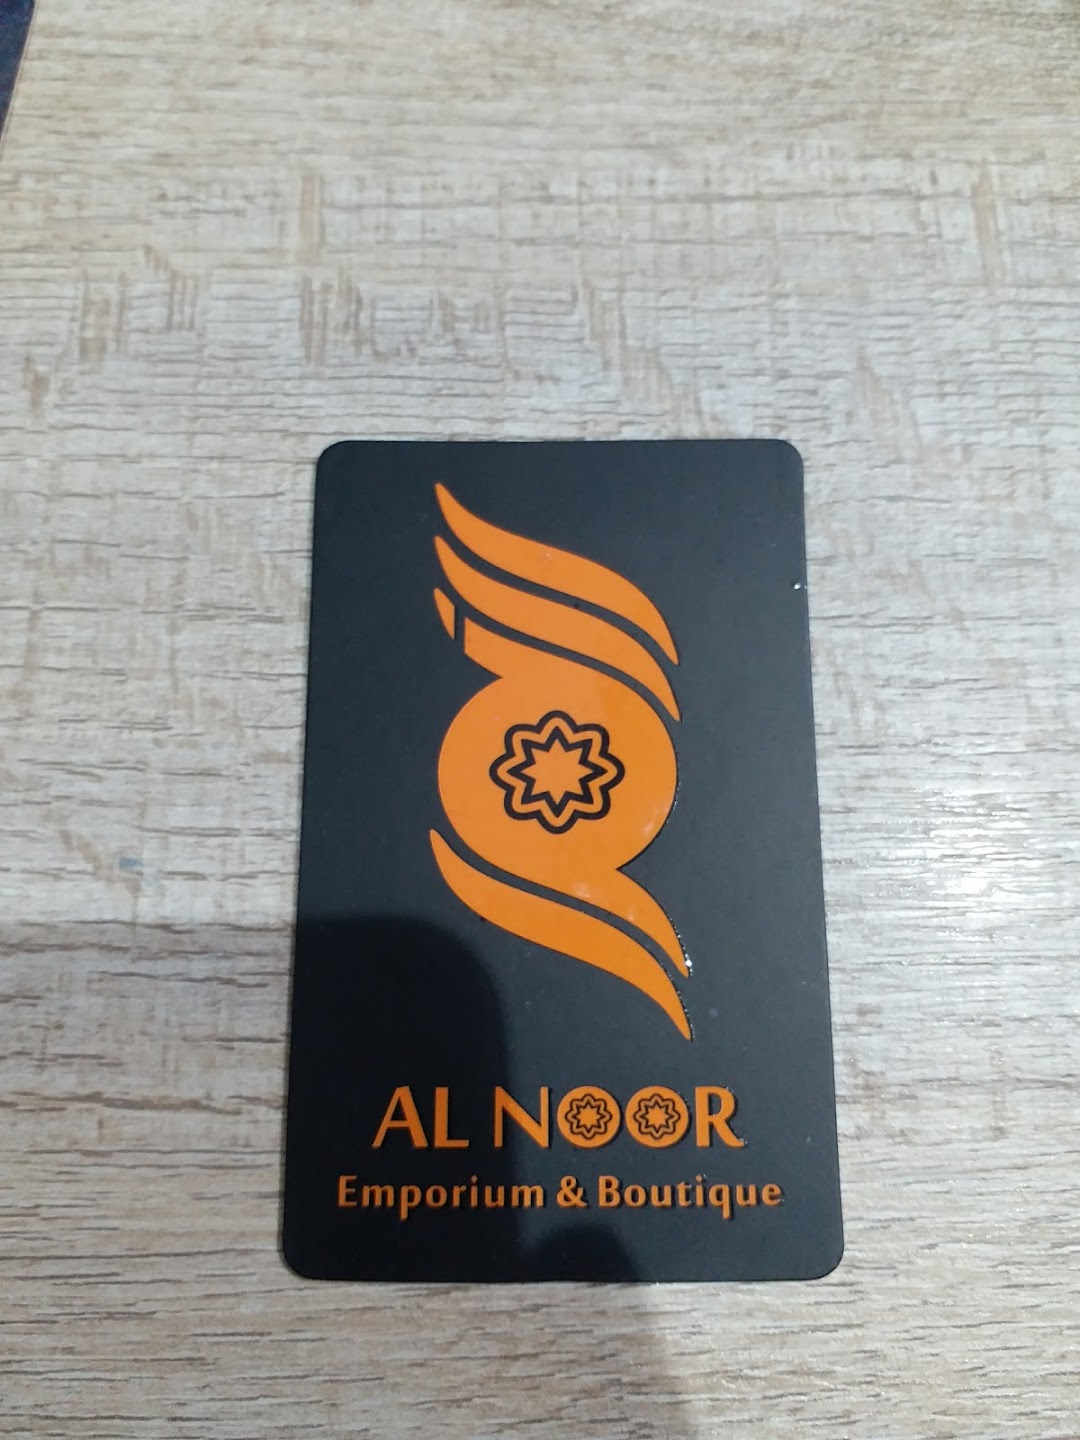 Alnoor Emporium & Boutique